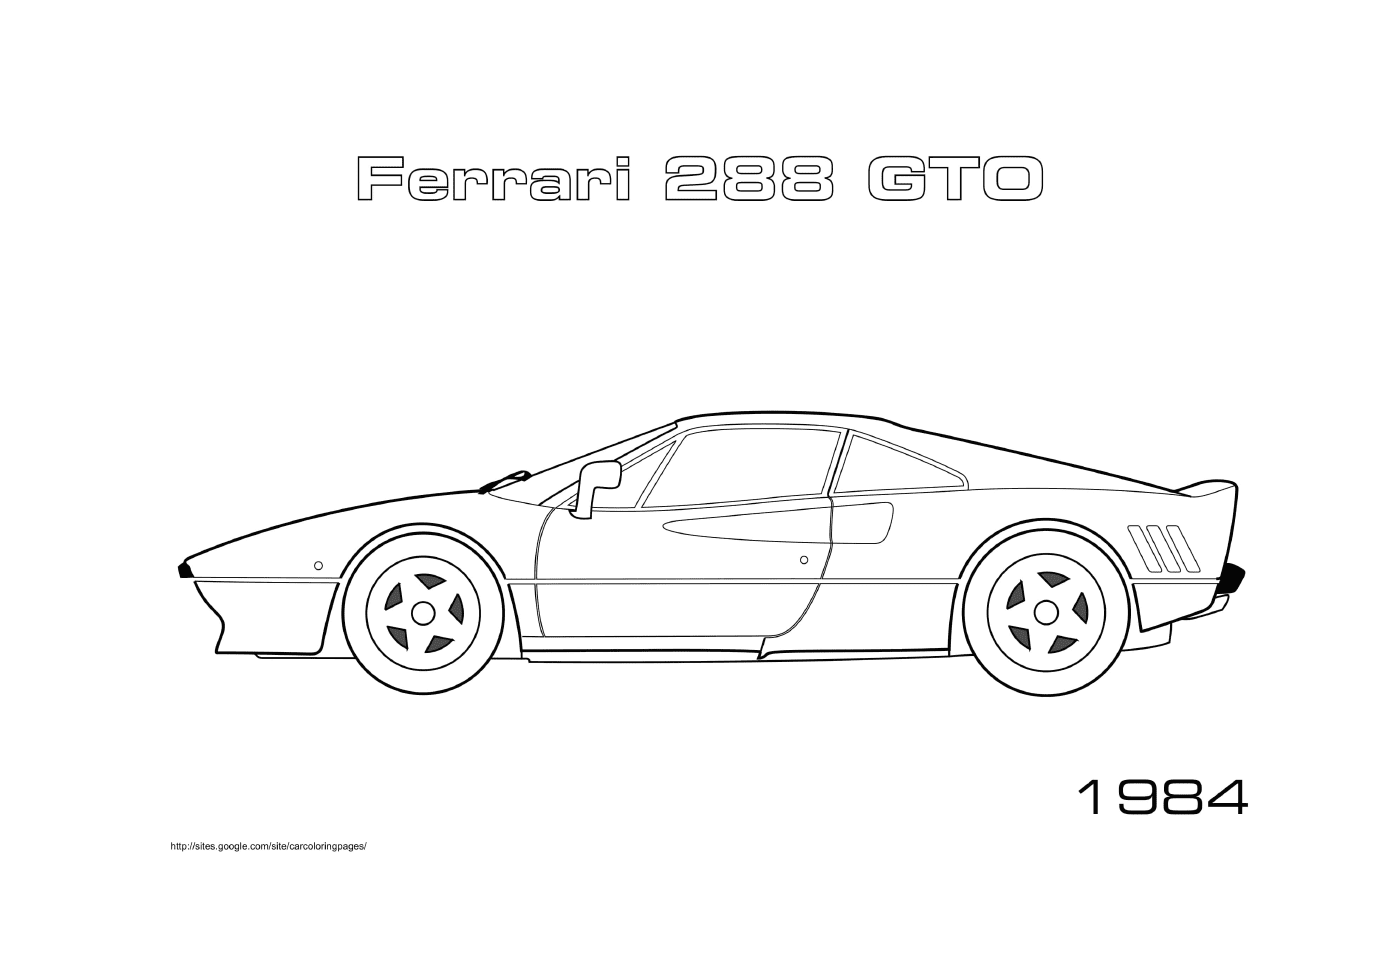   Une voiture Ferrari 288 GTO 1984 